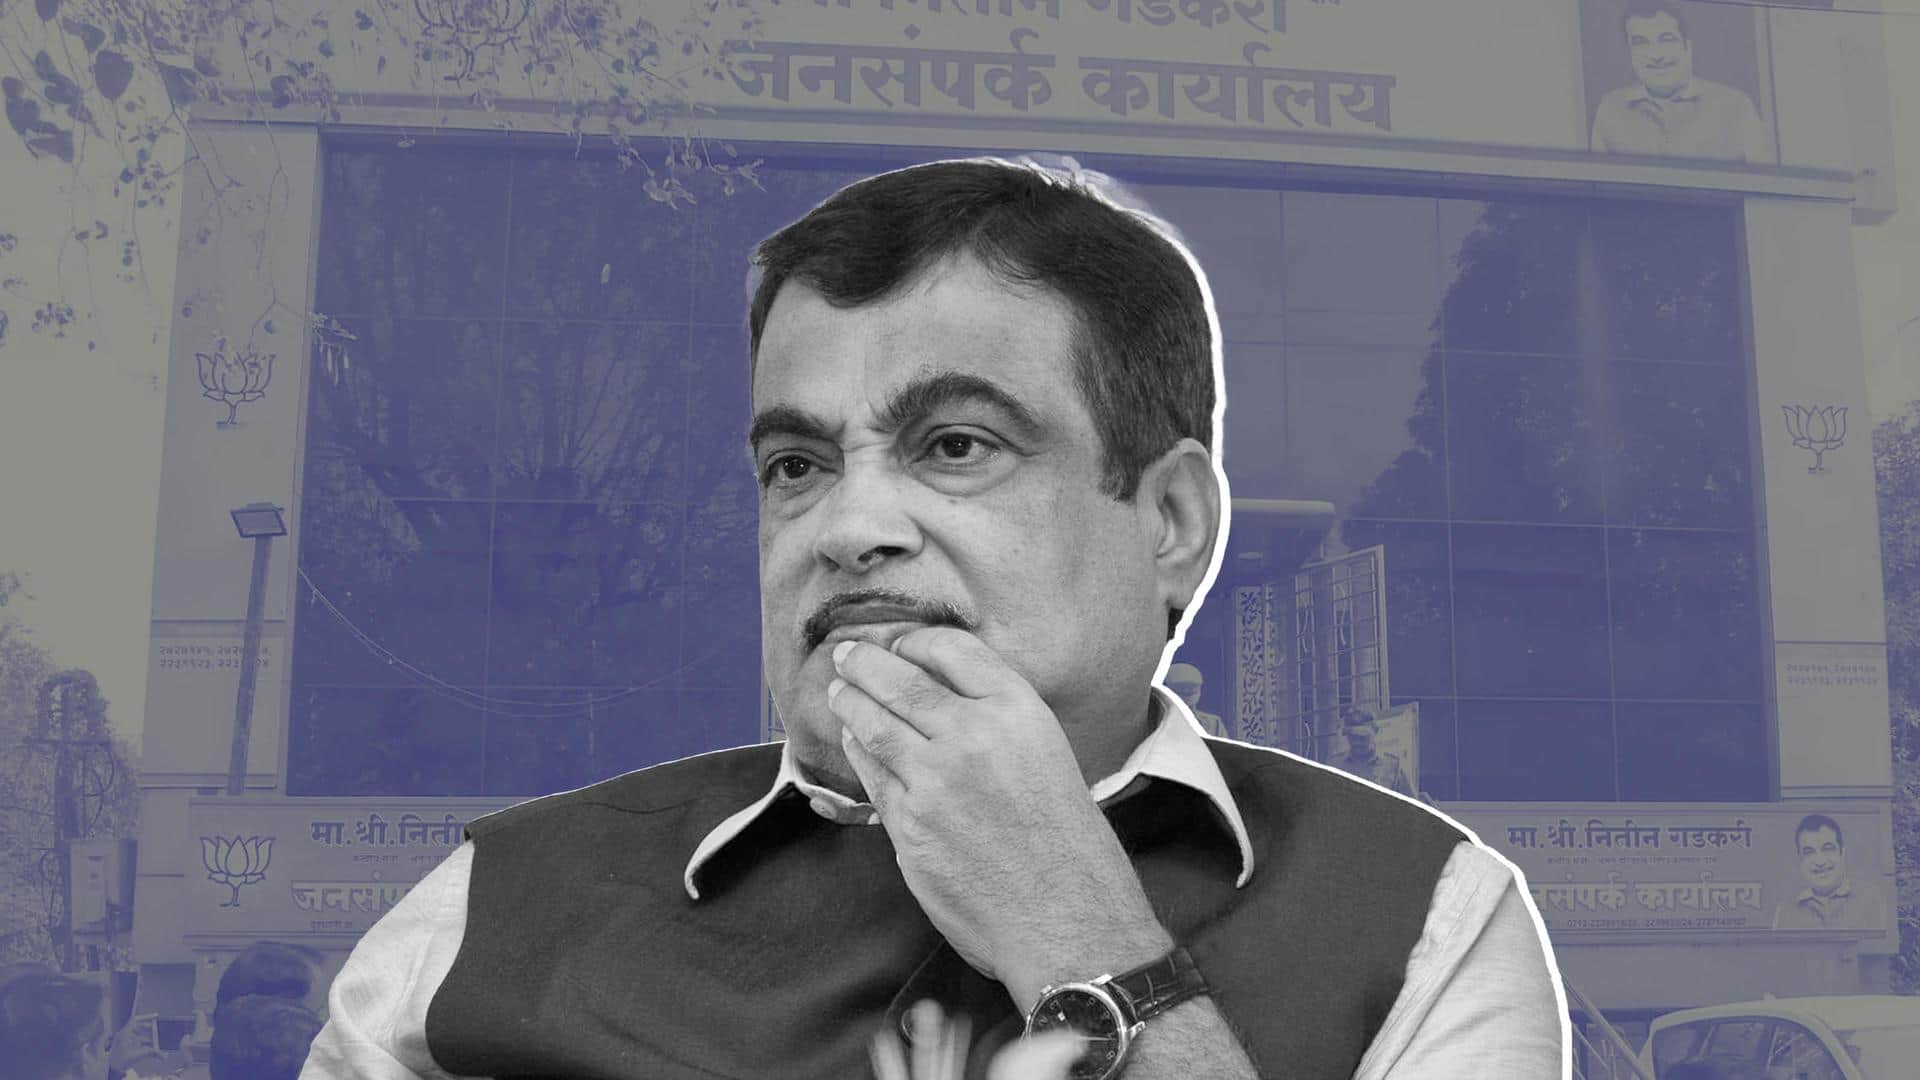 Maharashtra: Nitin Gadkari receives threat calls at Nagpur office